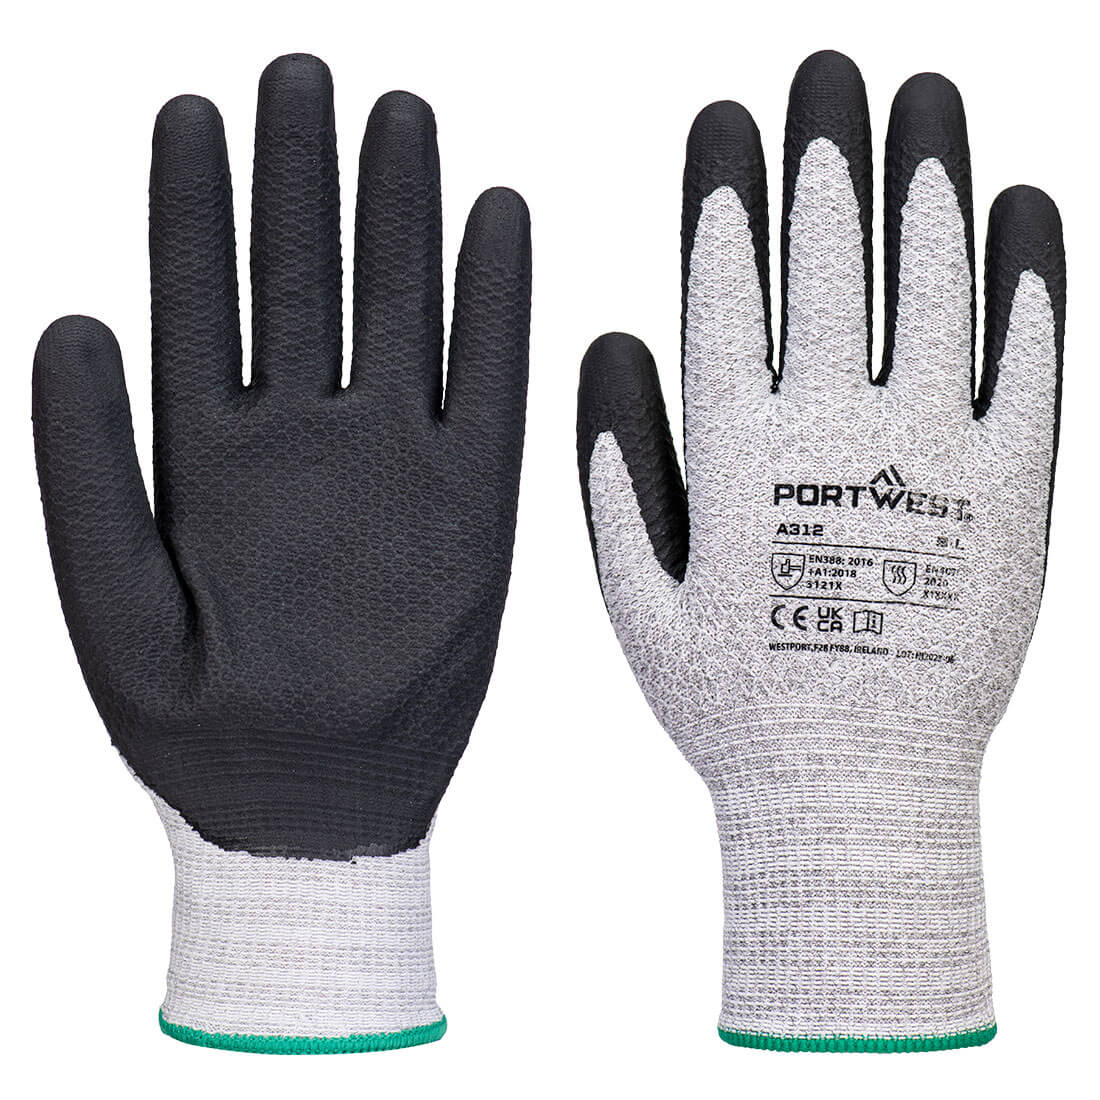 Grip 13 Nitrile Diamond Knit Glove (Pk12)  (A312)